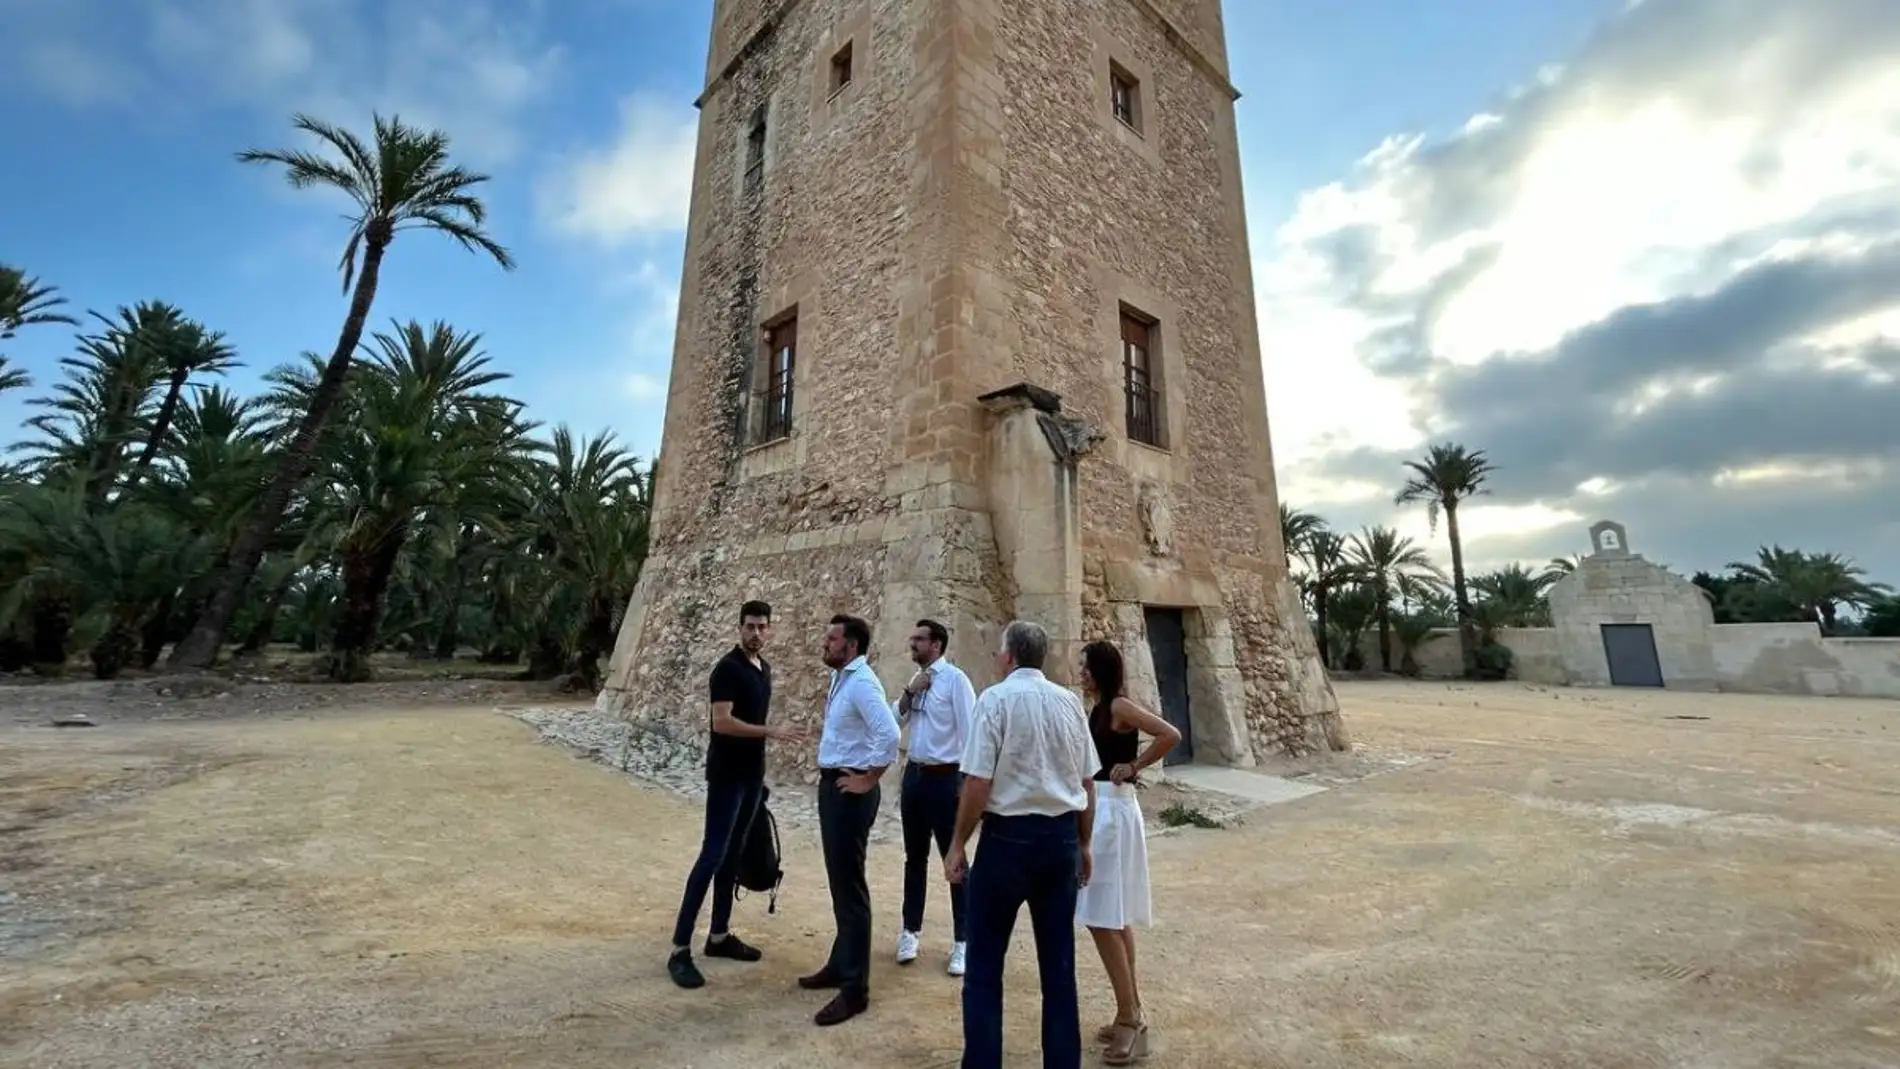  El Ayuntamiento reabrirá al público la Torre de los Vaillo tras ocho años cerrada.